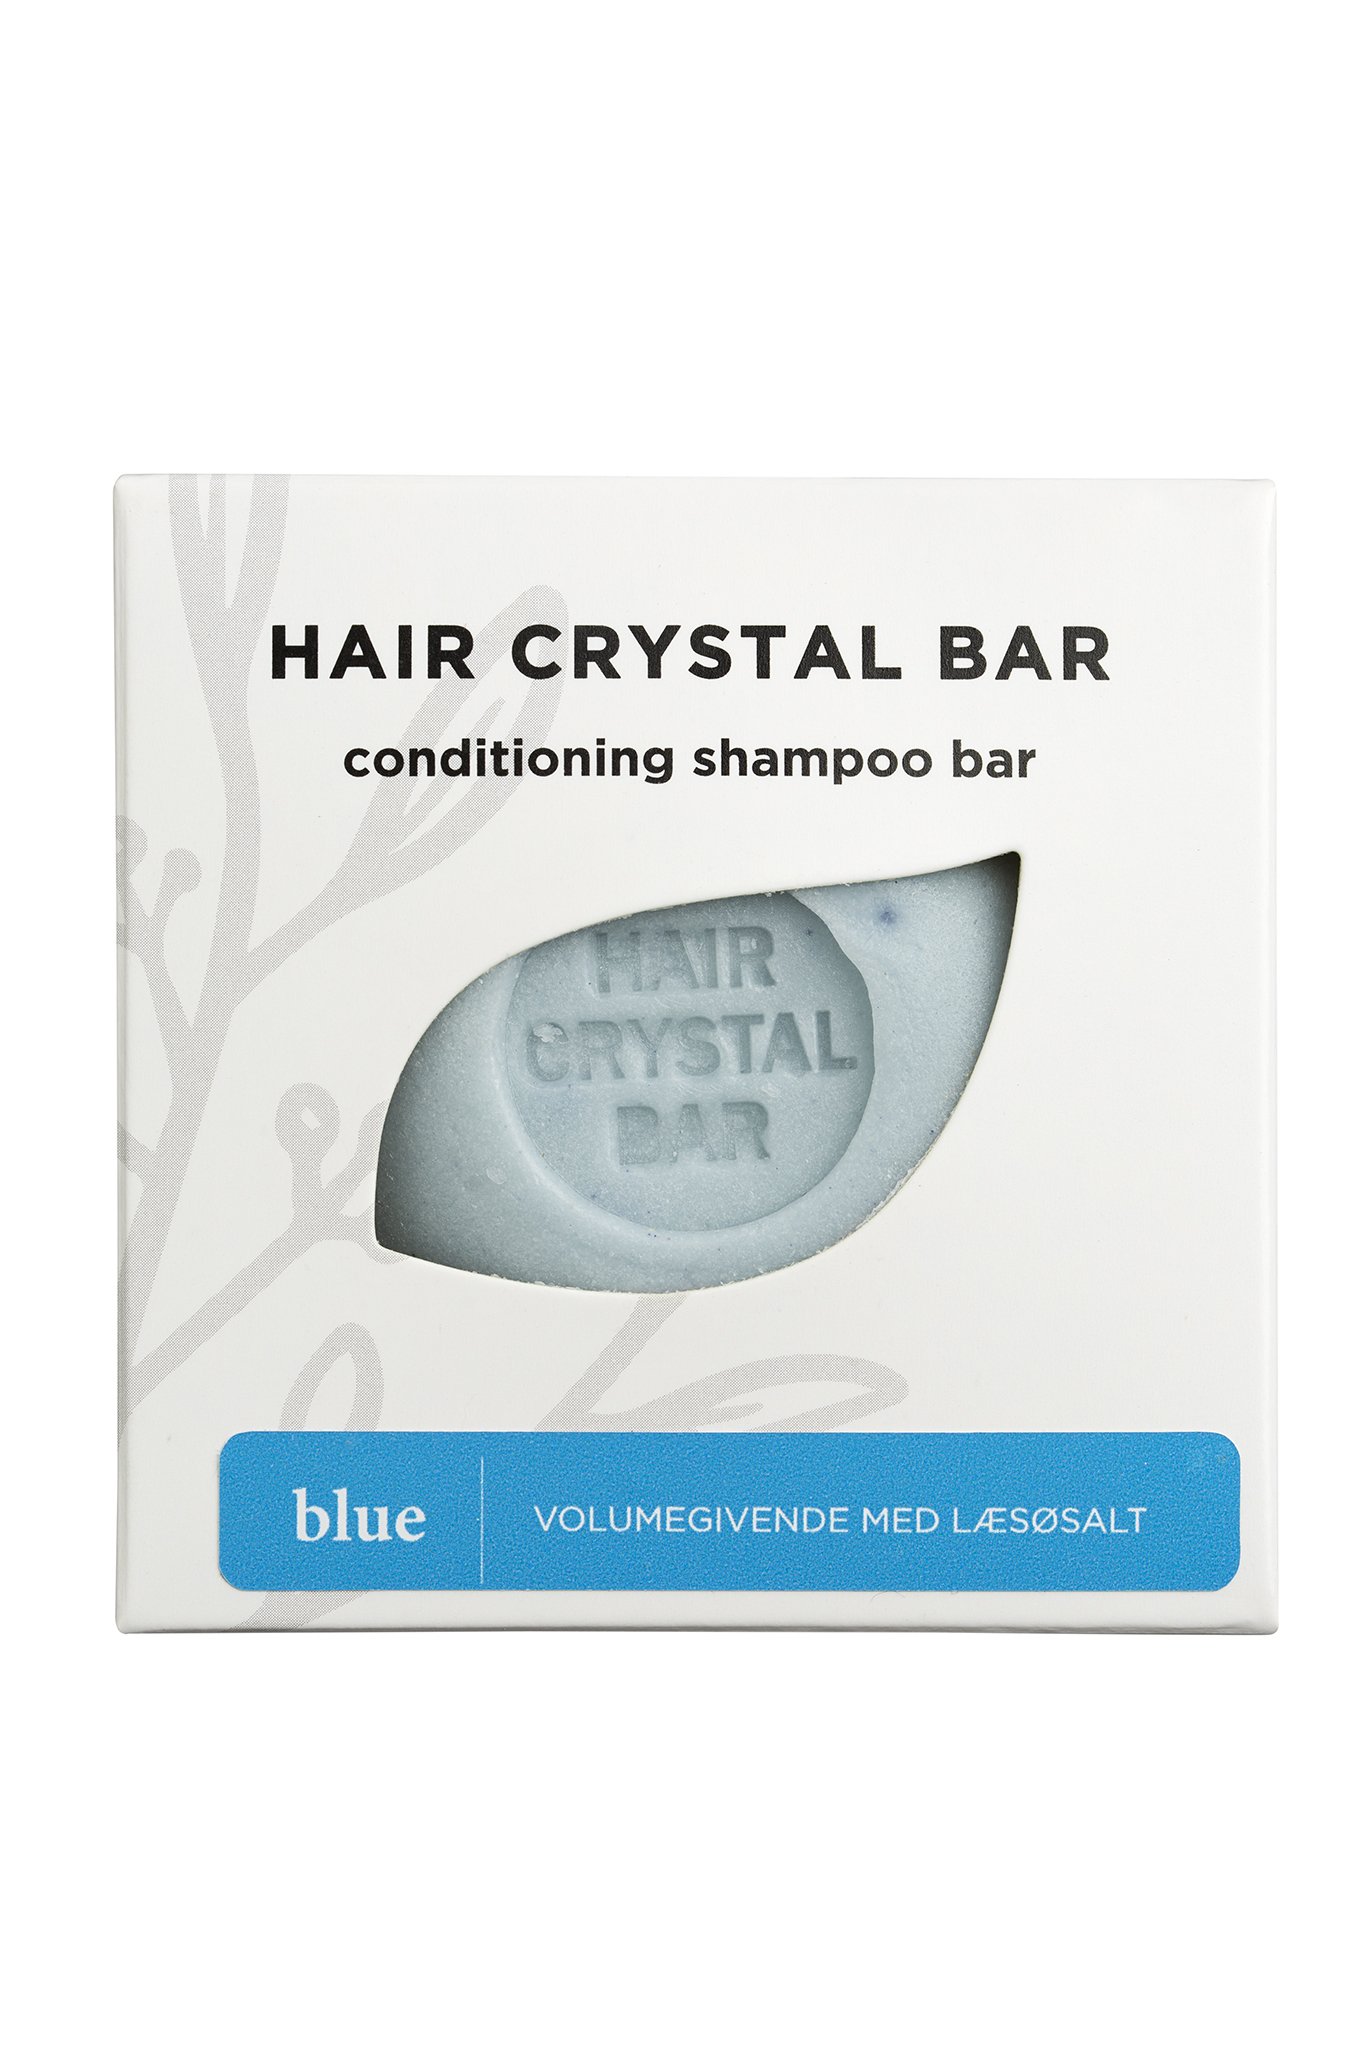 Shampoo bar - BLUE - med Læsø Salt - Giver Volume og Glans - unisex duft - BAR - Lundegaardens-hudpleje.dk